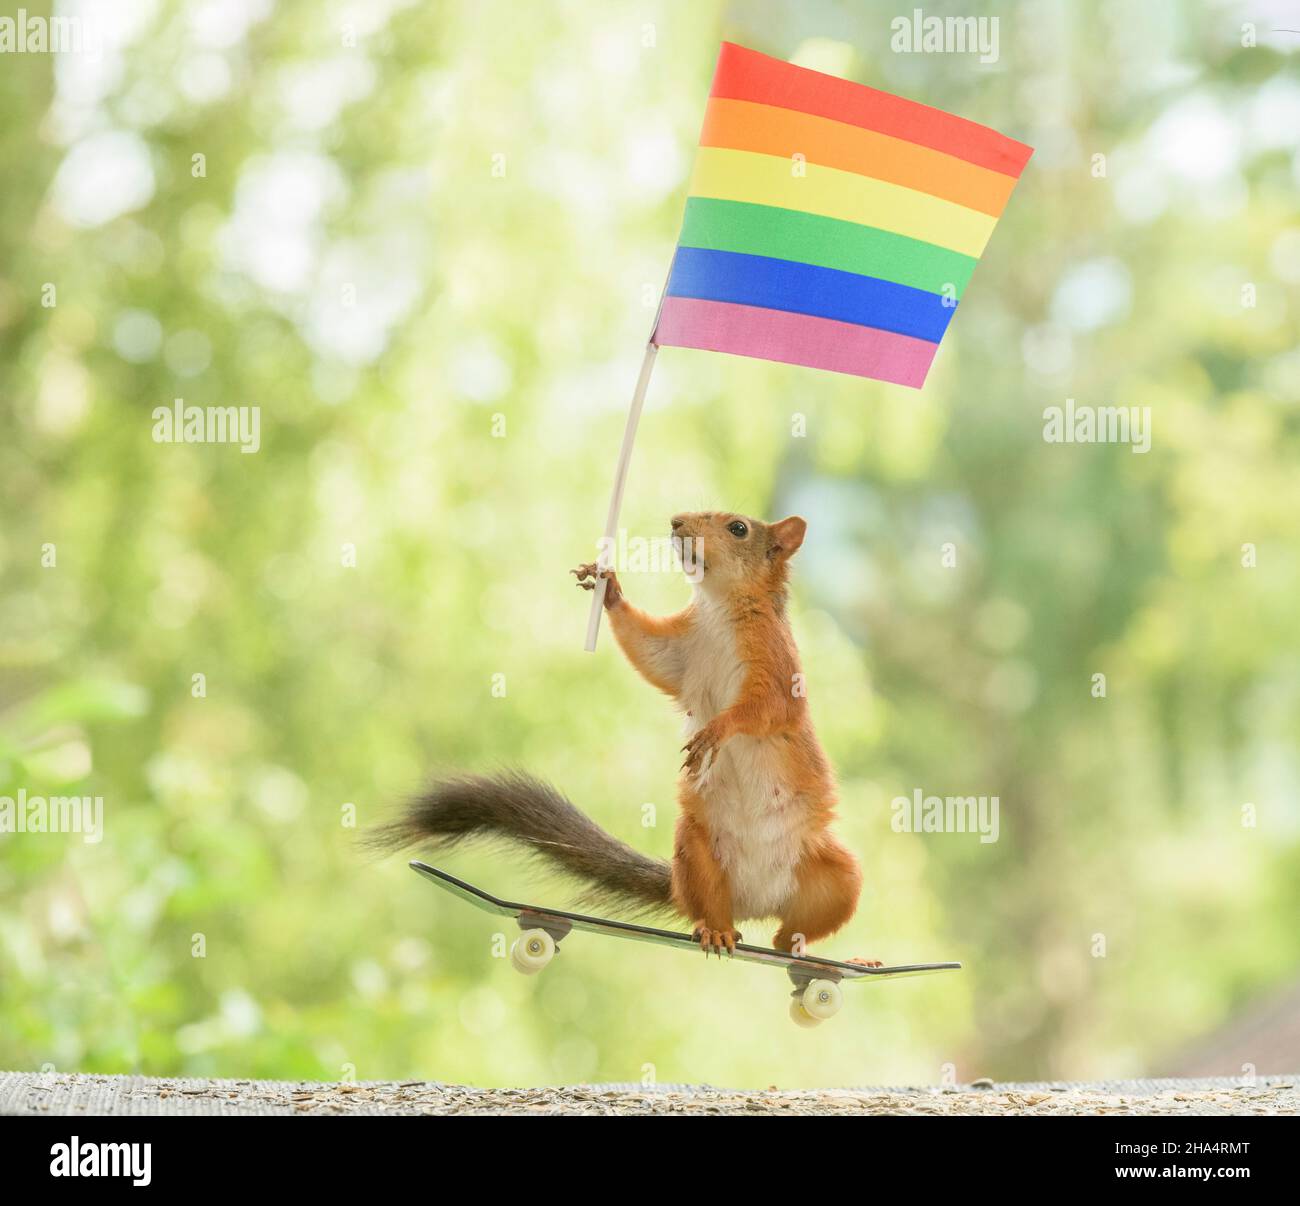 Rotes Eichhörnchen hält eine Regenbogenfahne auf einem Skateboard Stockfoto